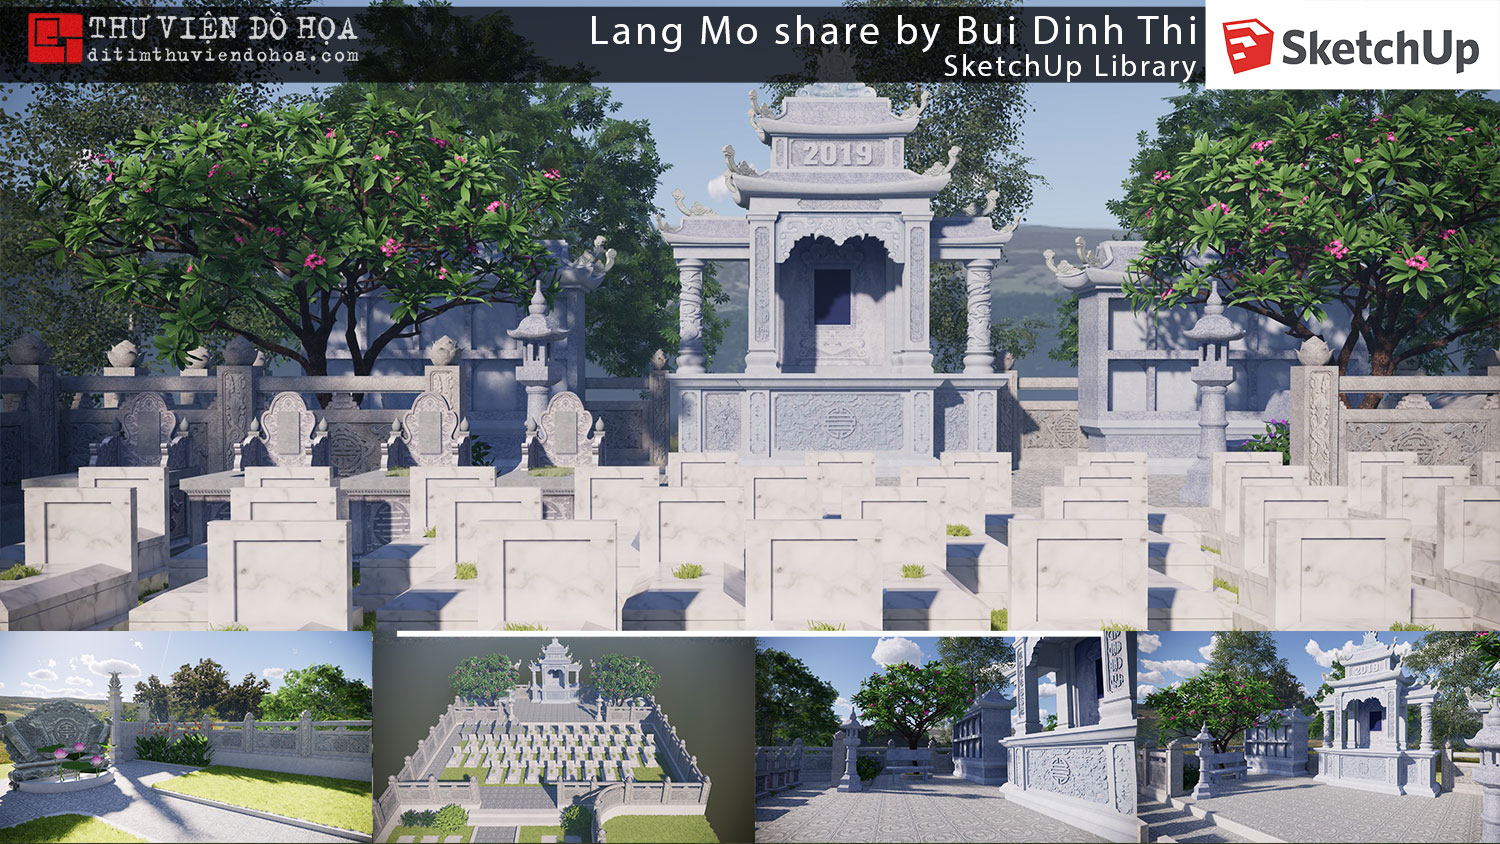 Sketchup Library – Lang Mo share by Bui Dinh Thi post thumbnail image